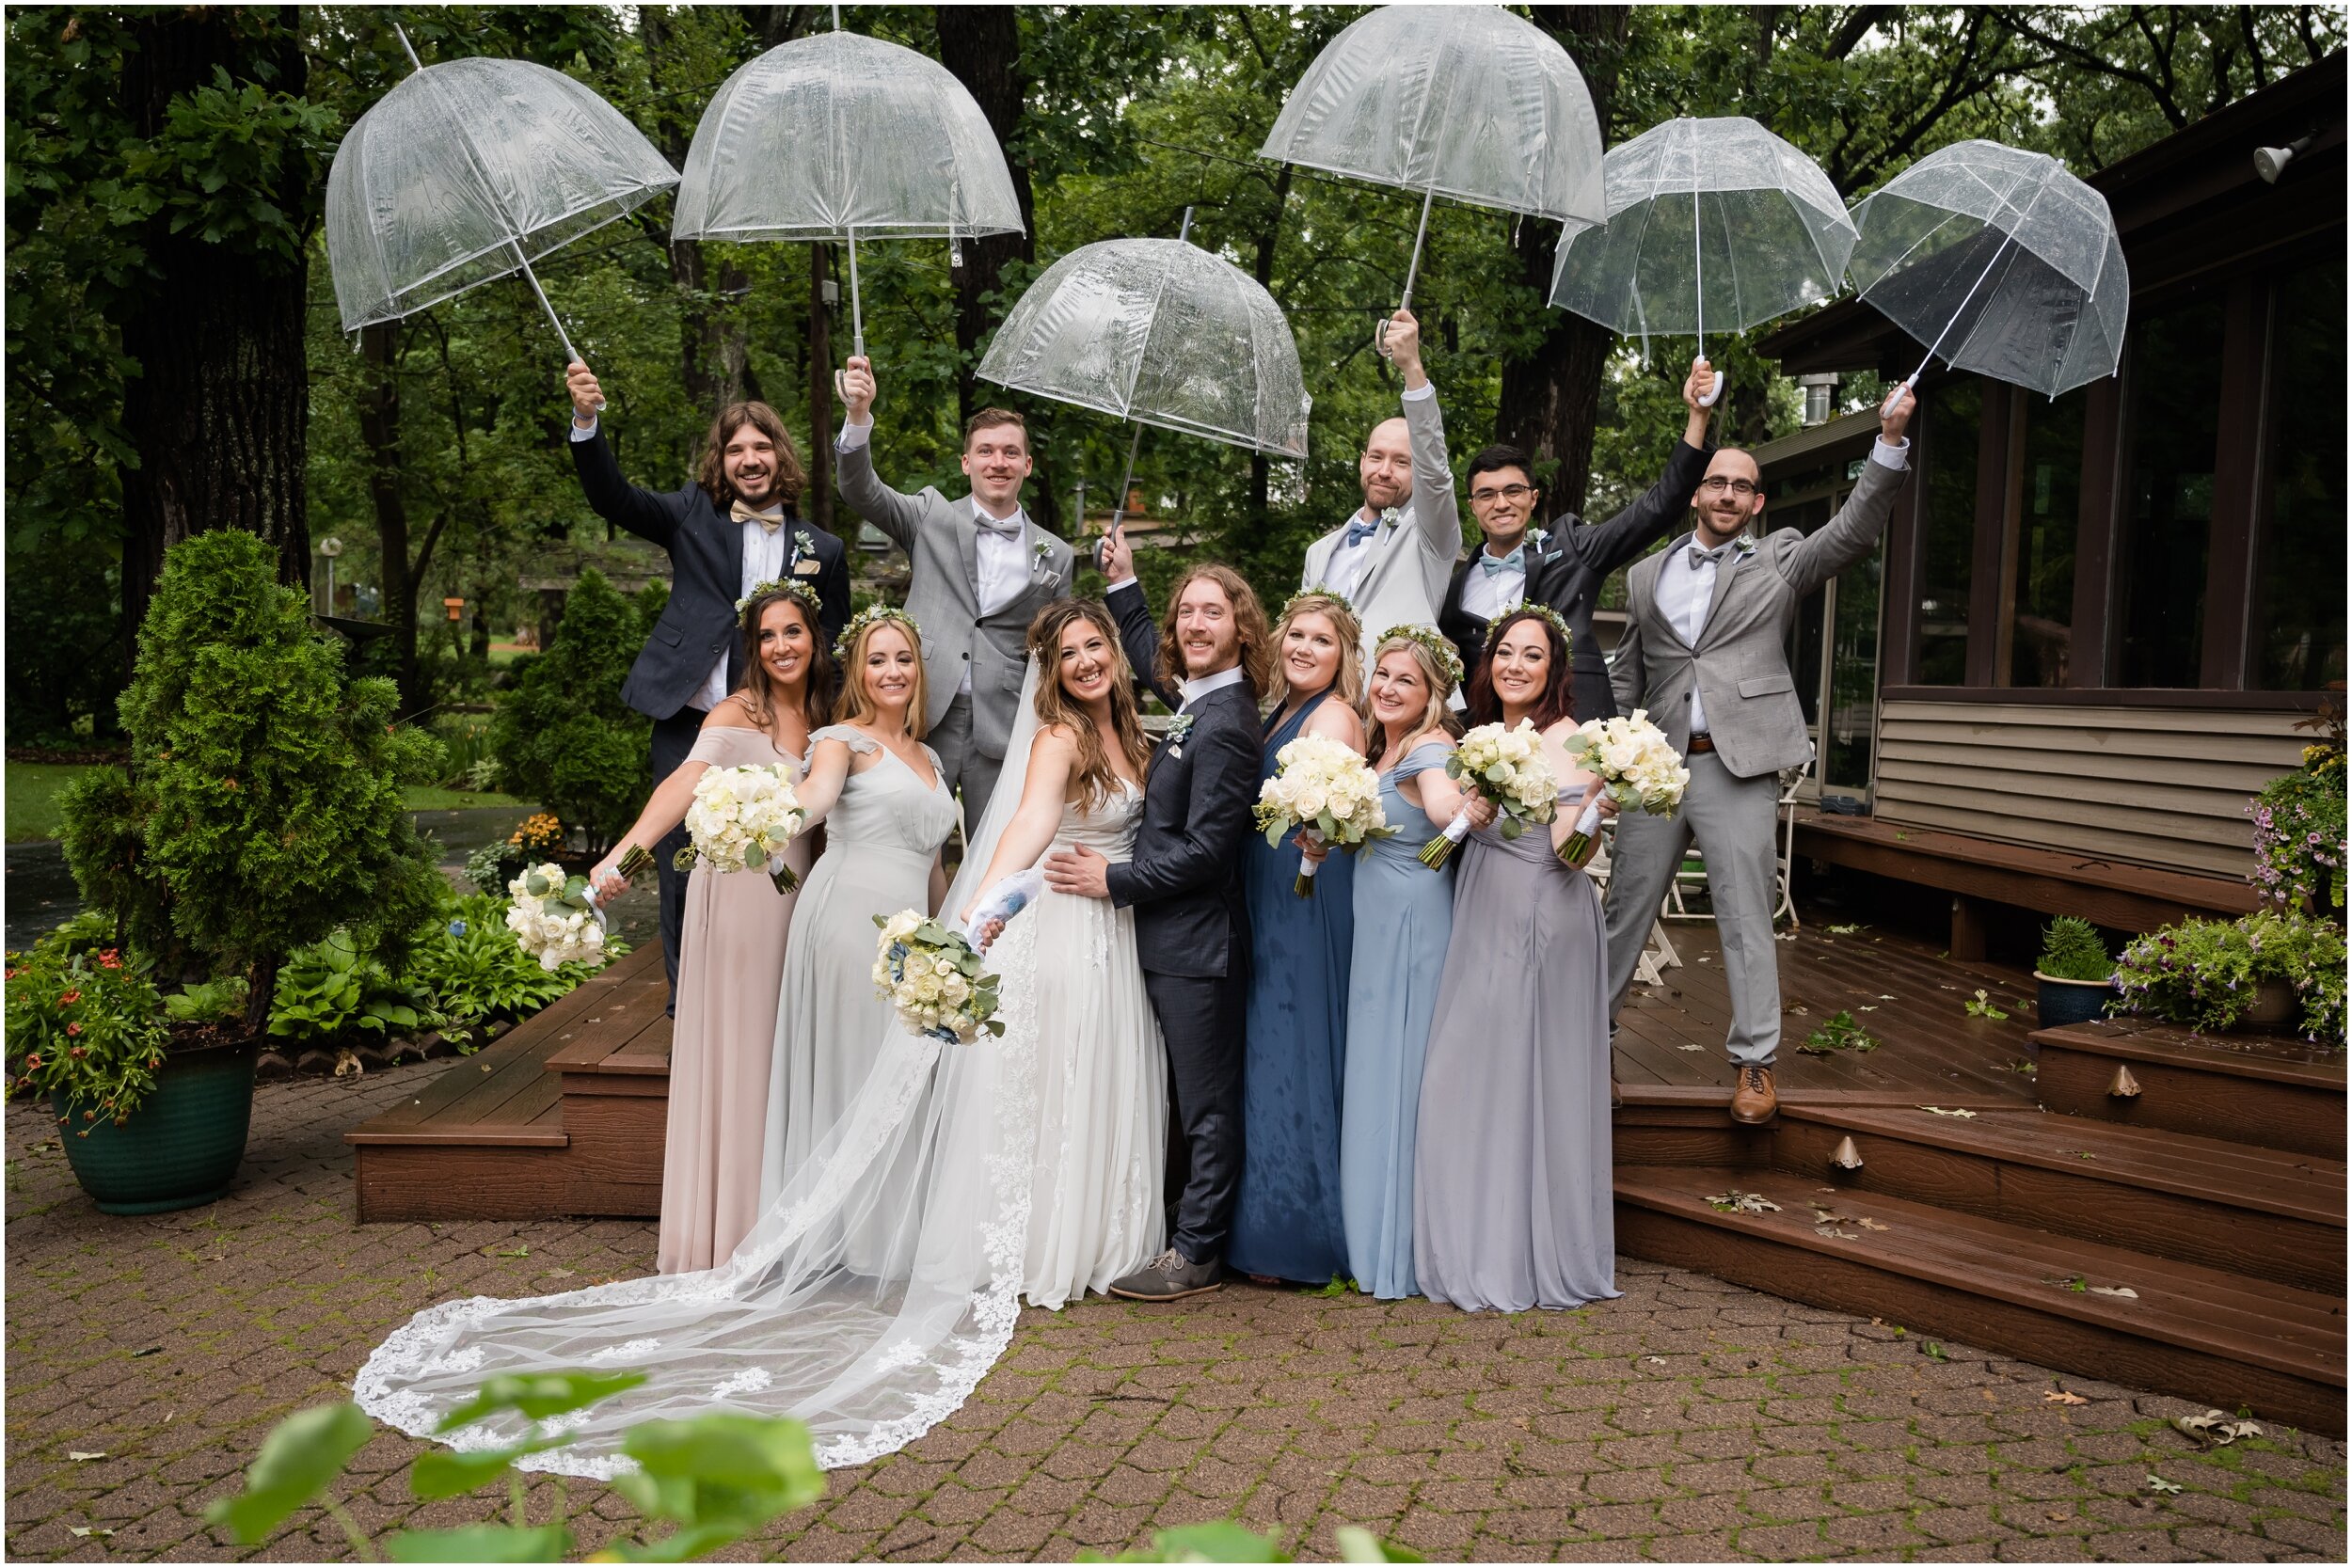 Wedding Party with umbrellas